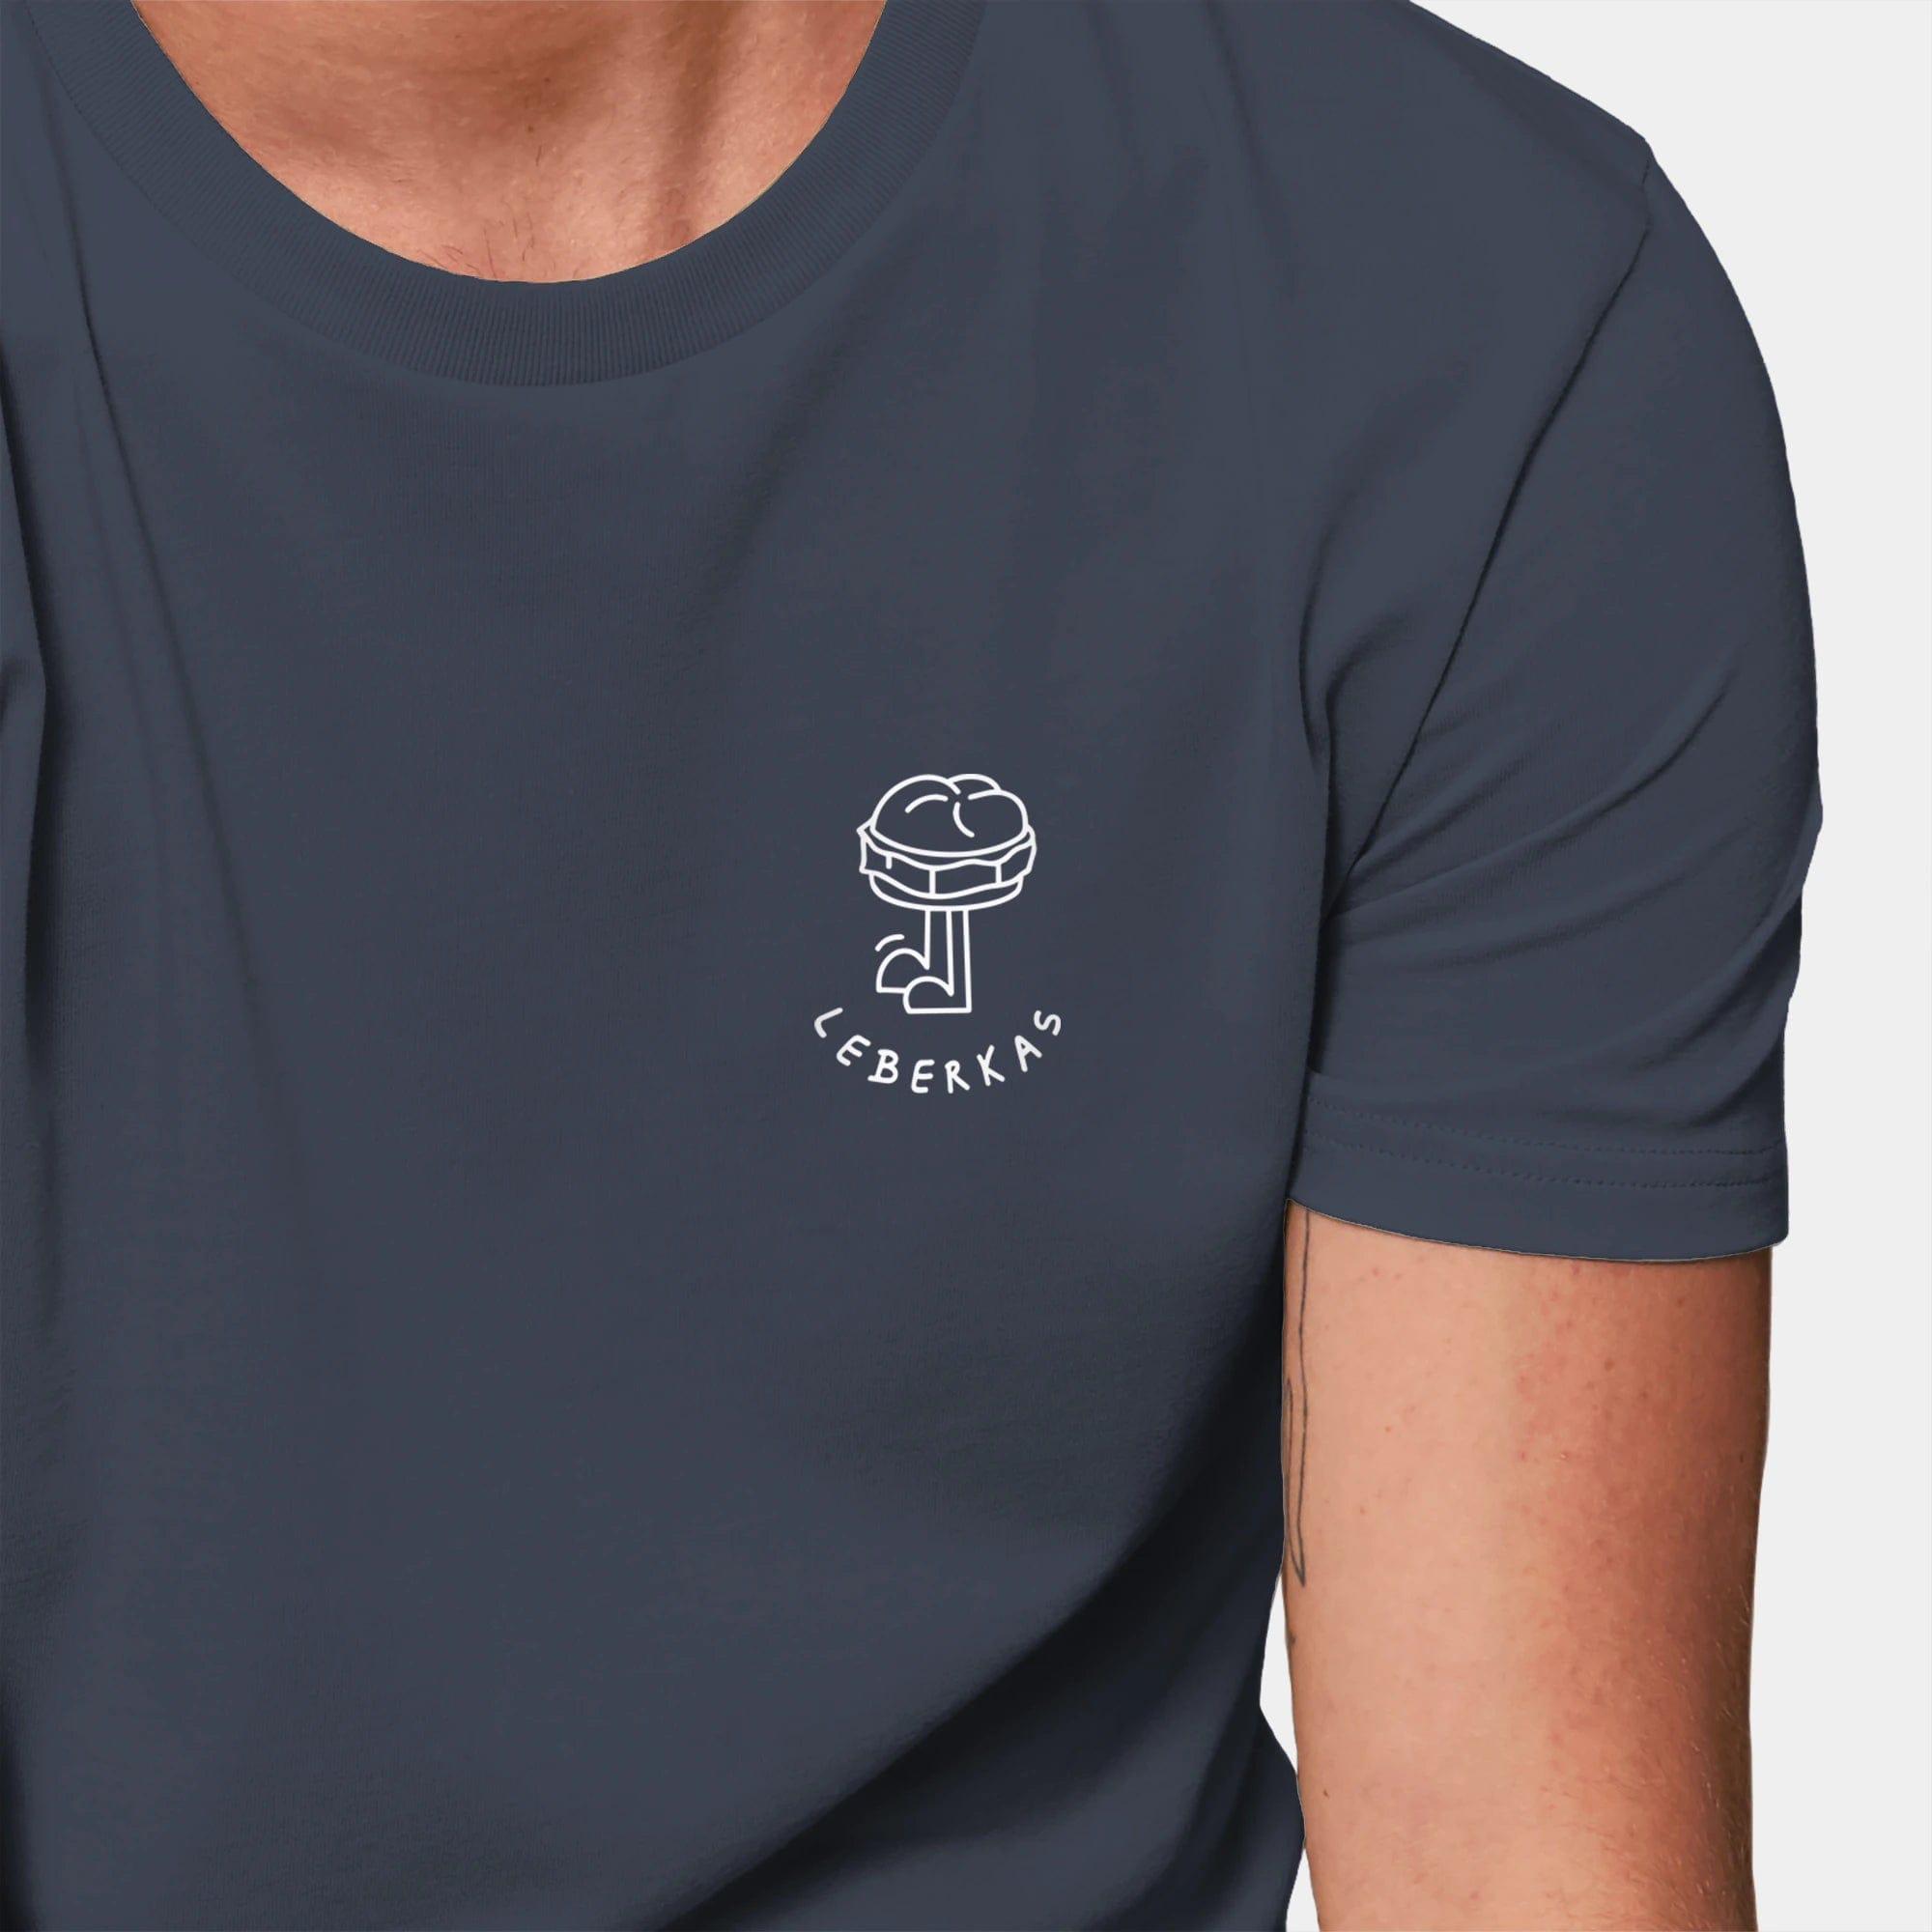 HEITER & LÄSSIG T-Shirt ORIGINAL "Leberkas" XXS / india ink grey - aus nachhaltiger und fairer Produktion